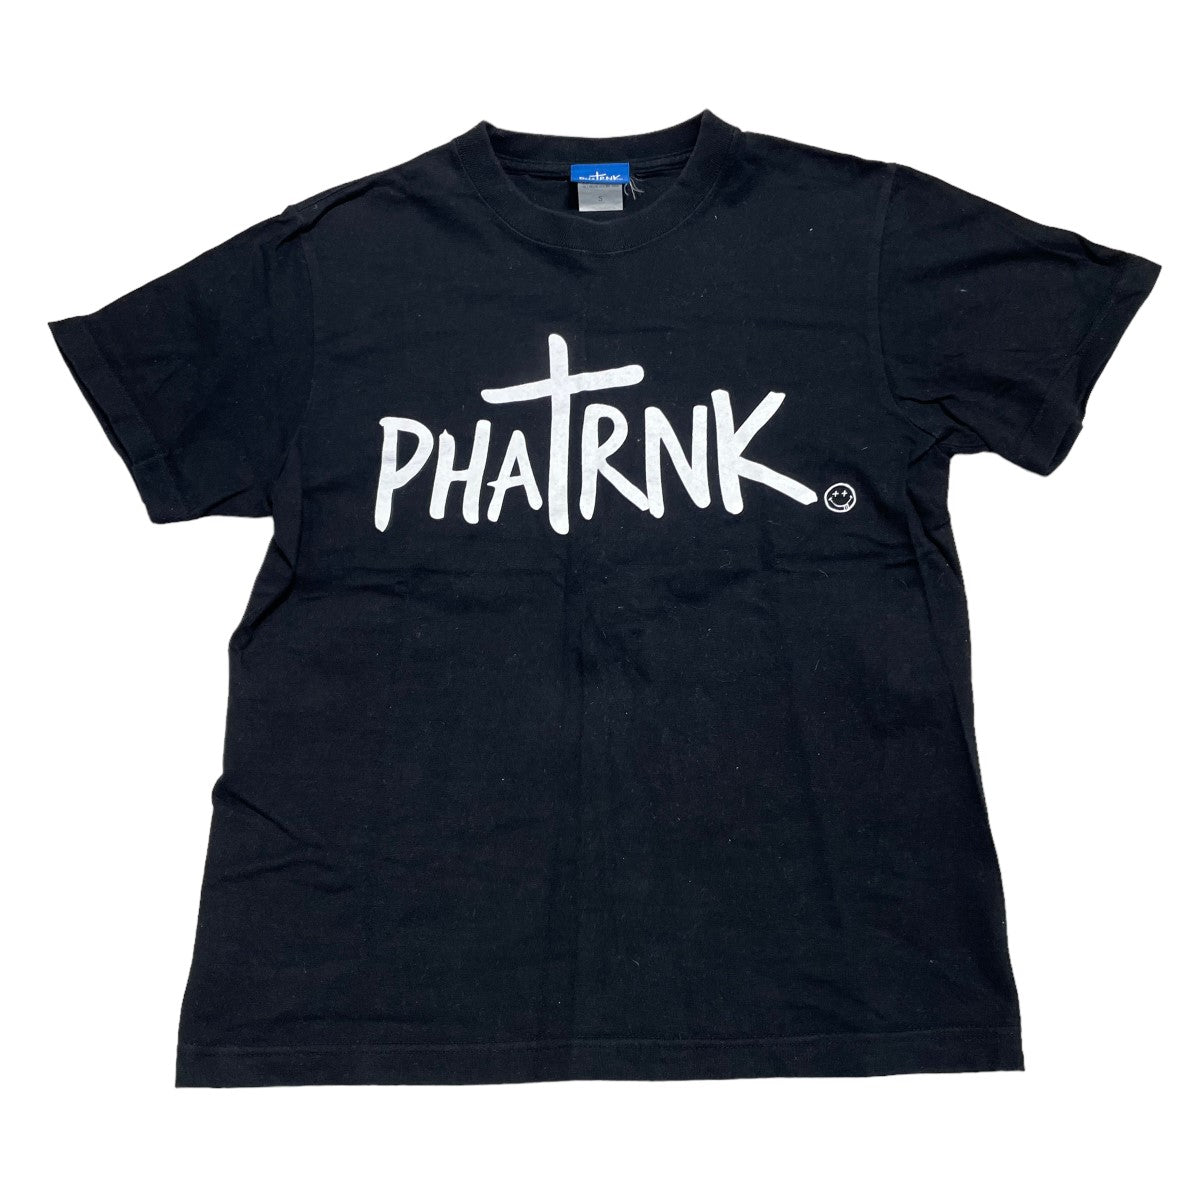 phatrnk 新作❗️ タトゥーロゴ ファットランク Tシャツ 黒 半袖 